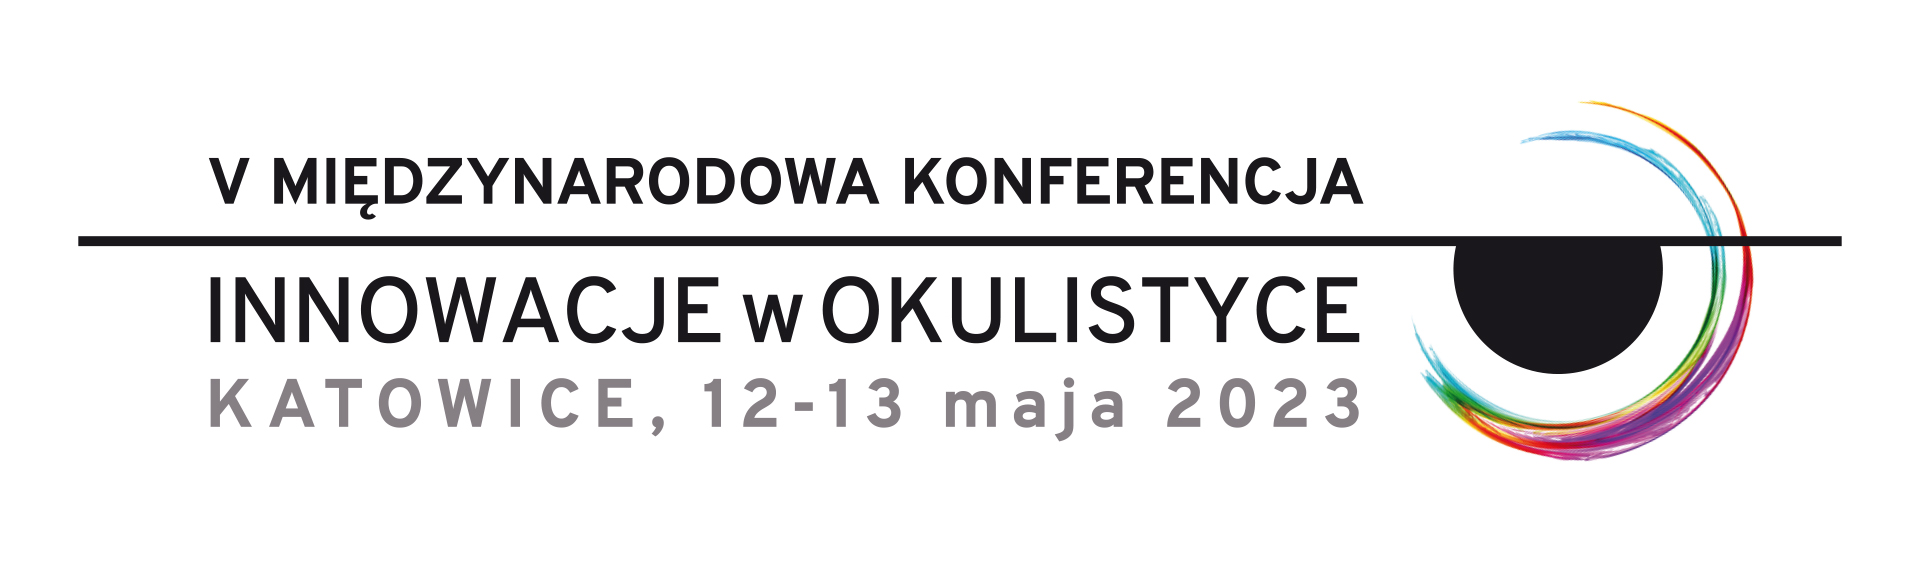 V Międzynarodowa Konferencja INNOWACJE w OKULISTYCE